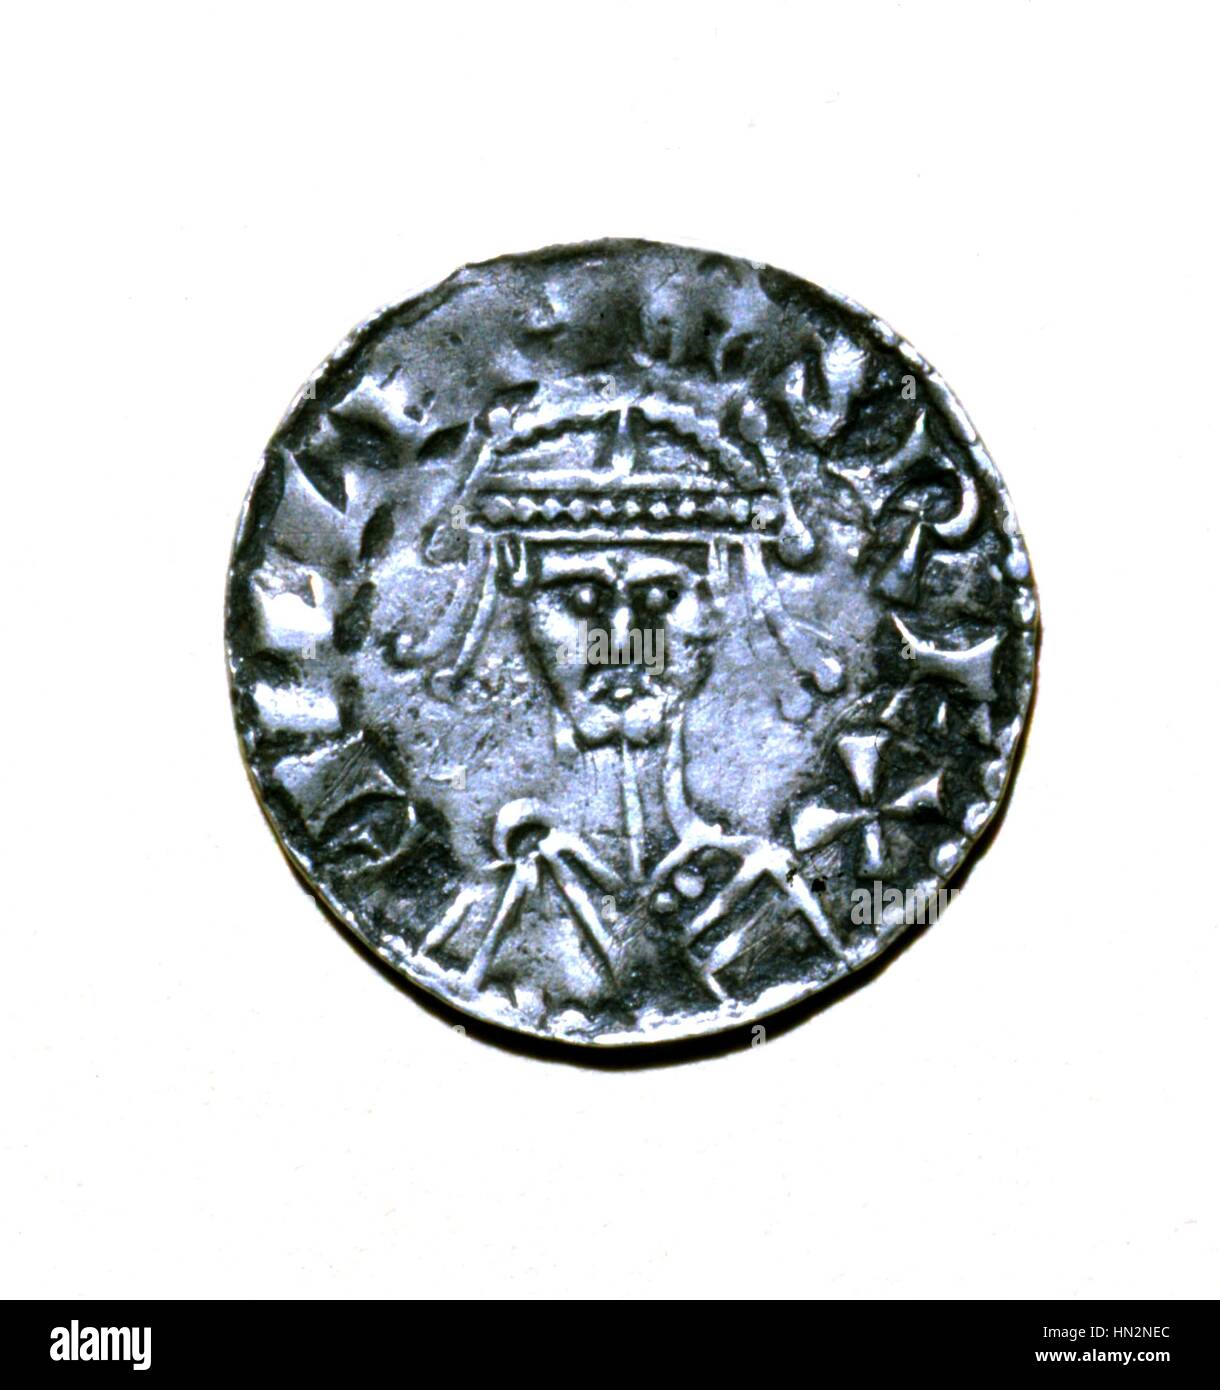 Recto von eine Silber-Leugner Vertretung Wilhelms des Eroberers (1027/28-1087), Herzog der Normandie (1035-1087) und König von England (1066-1087) 11. Jahrhundert Frankreich Stockfoto